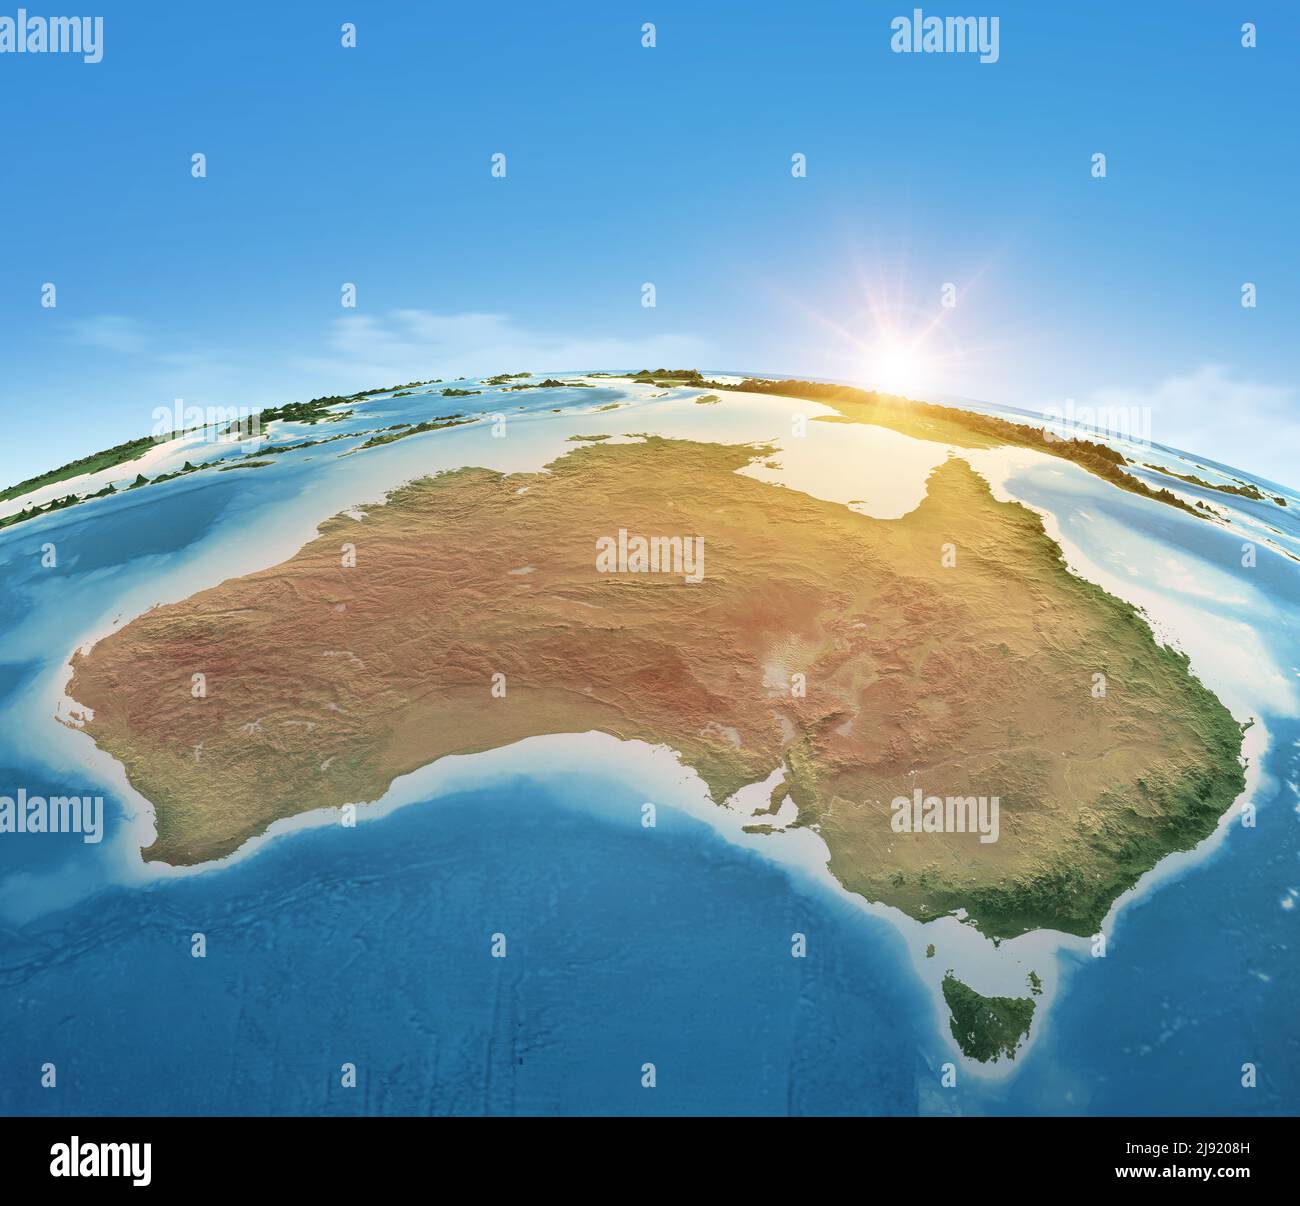 Carte physique de la planète Terre, axée sur l'Australie. Vue par satellite, soleil éclatant à l'horizon. Éléments fournis par la NASA Banque D'Images